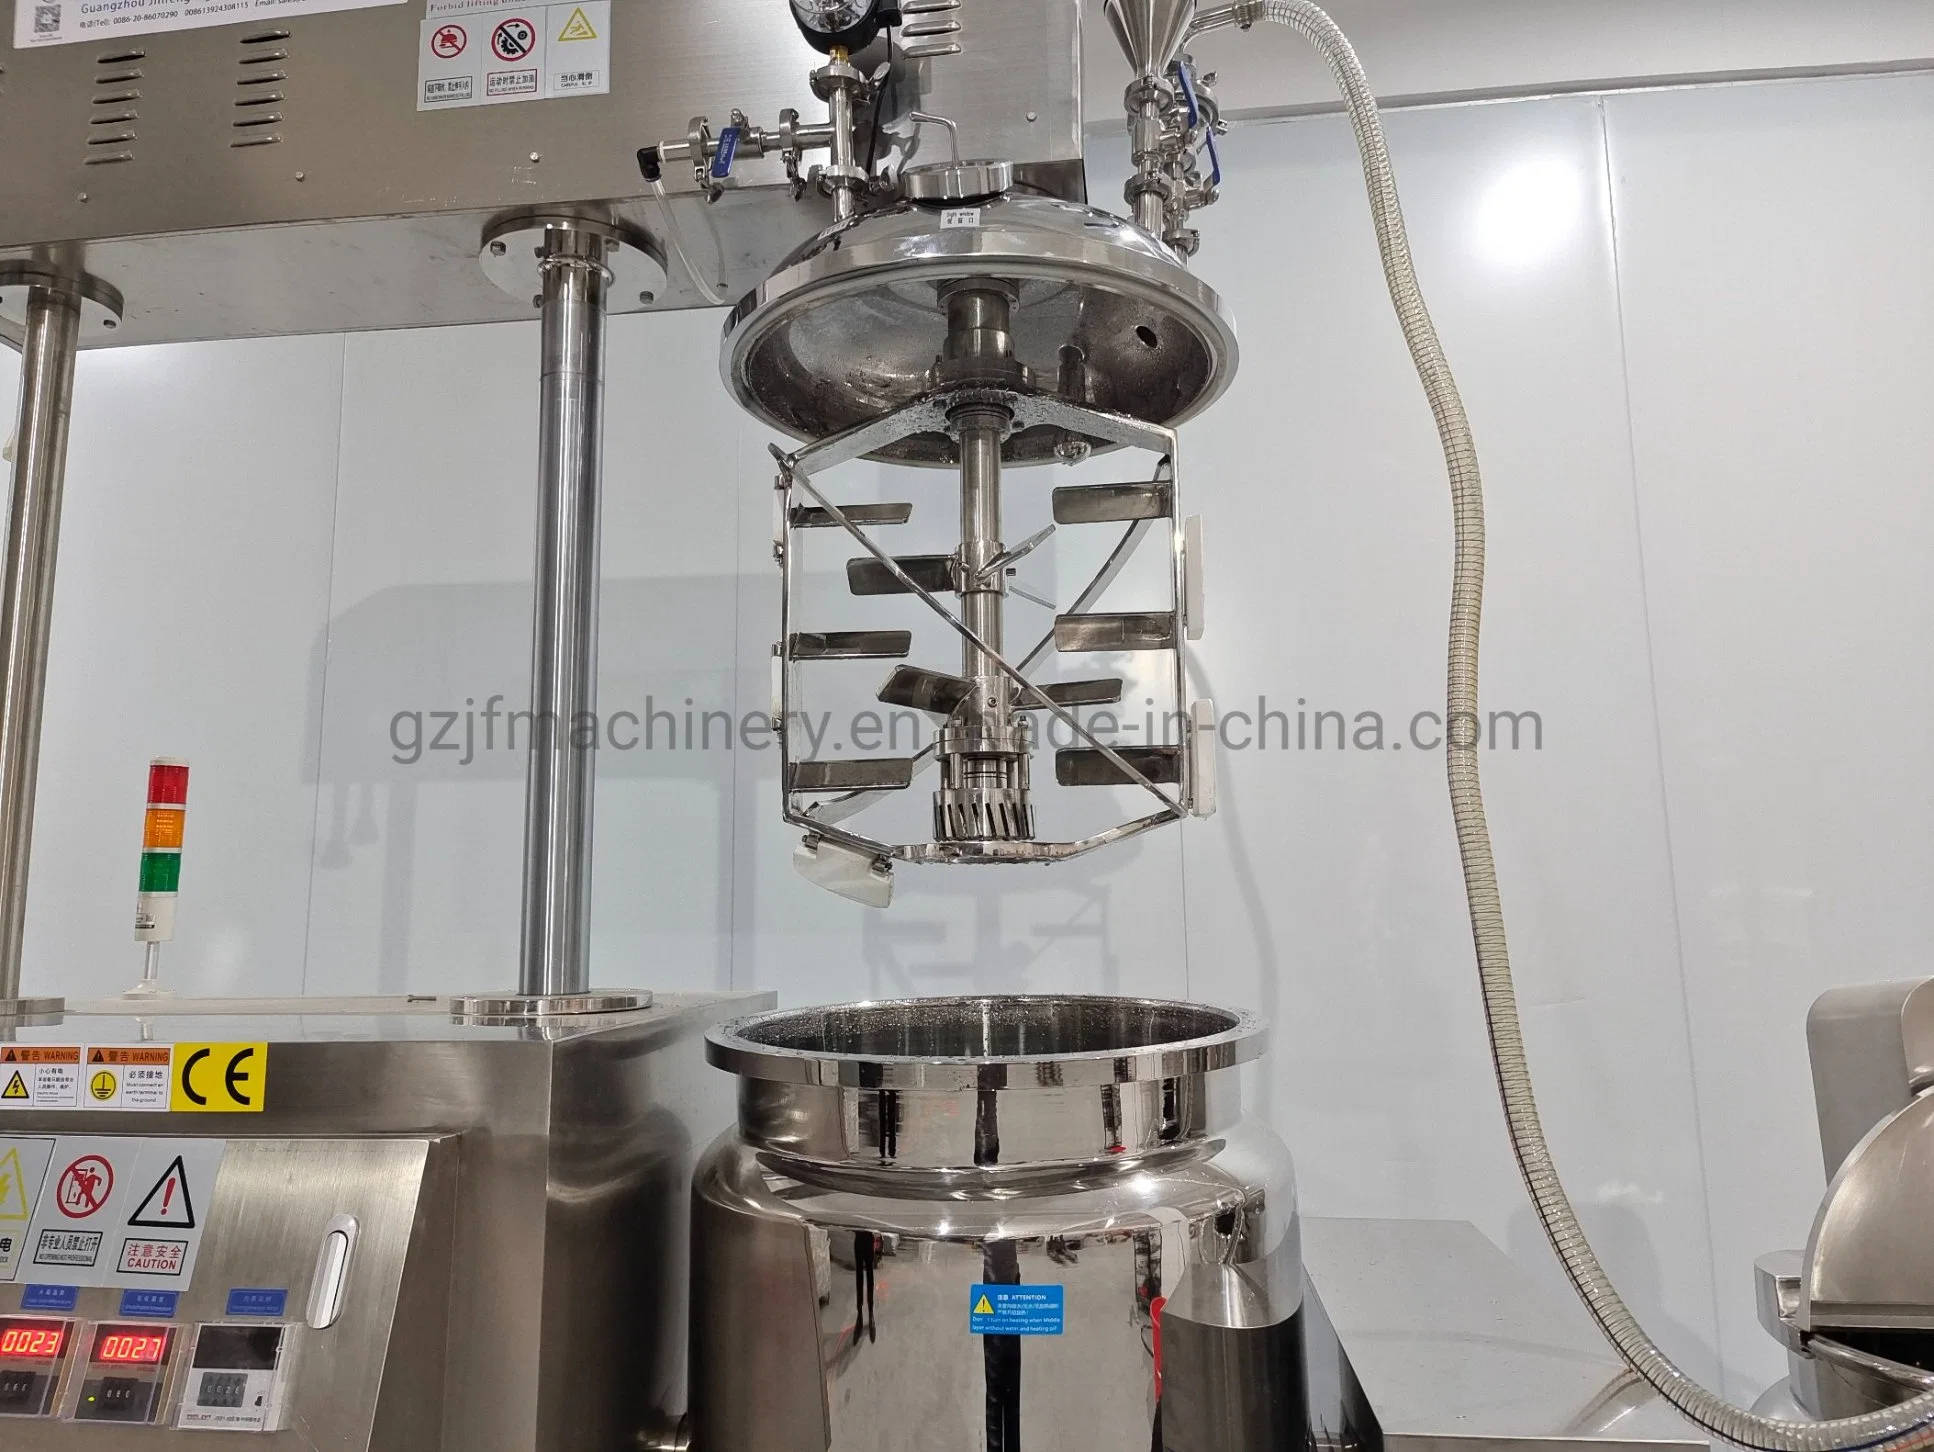 La Lotion de haute qualité Hand Sanitizer hydraulique de levage émulsifiant cosmétiques Mélangeur sous vide Machine